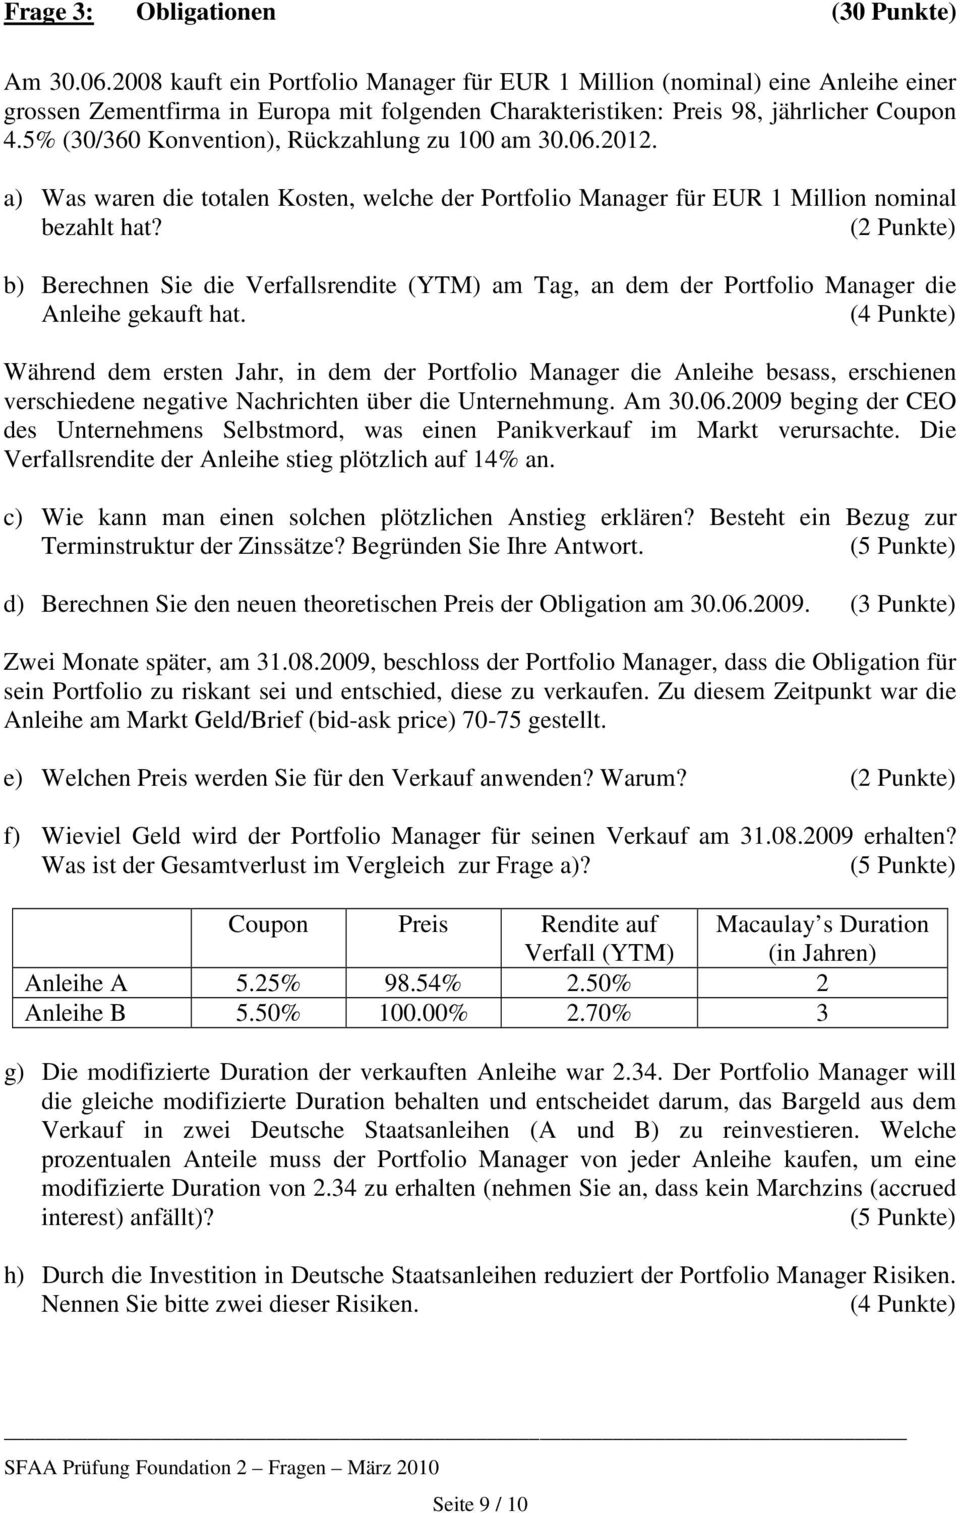 5% (30/360 Konvention), Rückzahlung zu 100 am 30.06.2012. a) Was waren die totalen Kosten, welche der Portfolio Manager für EUR 1 Million nominal bezahlt hat?